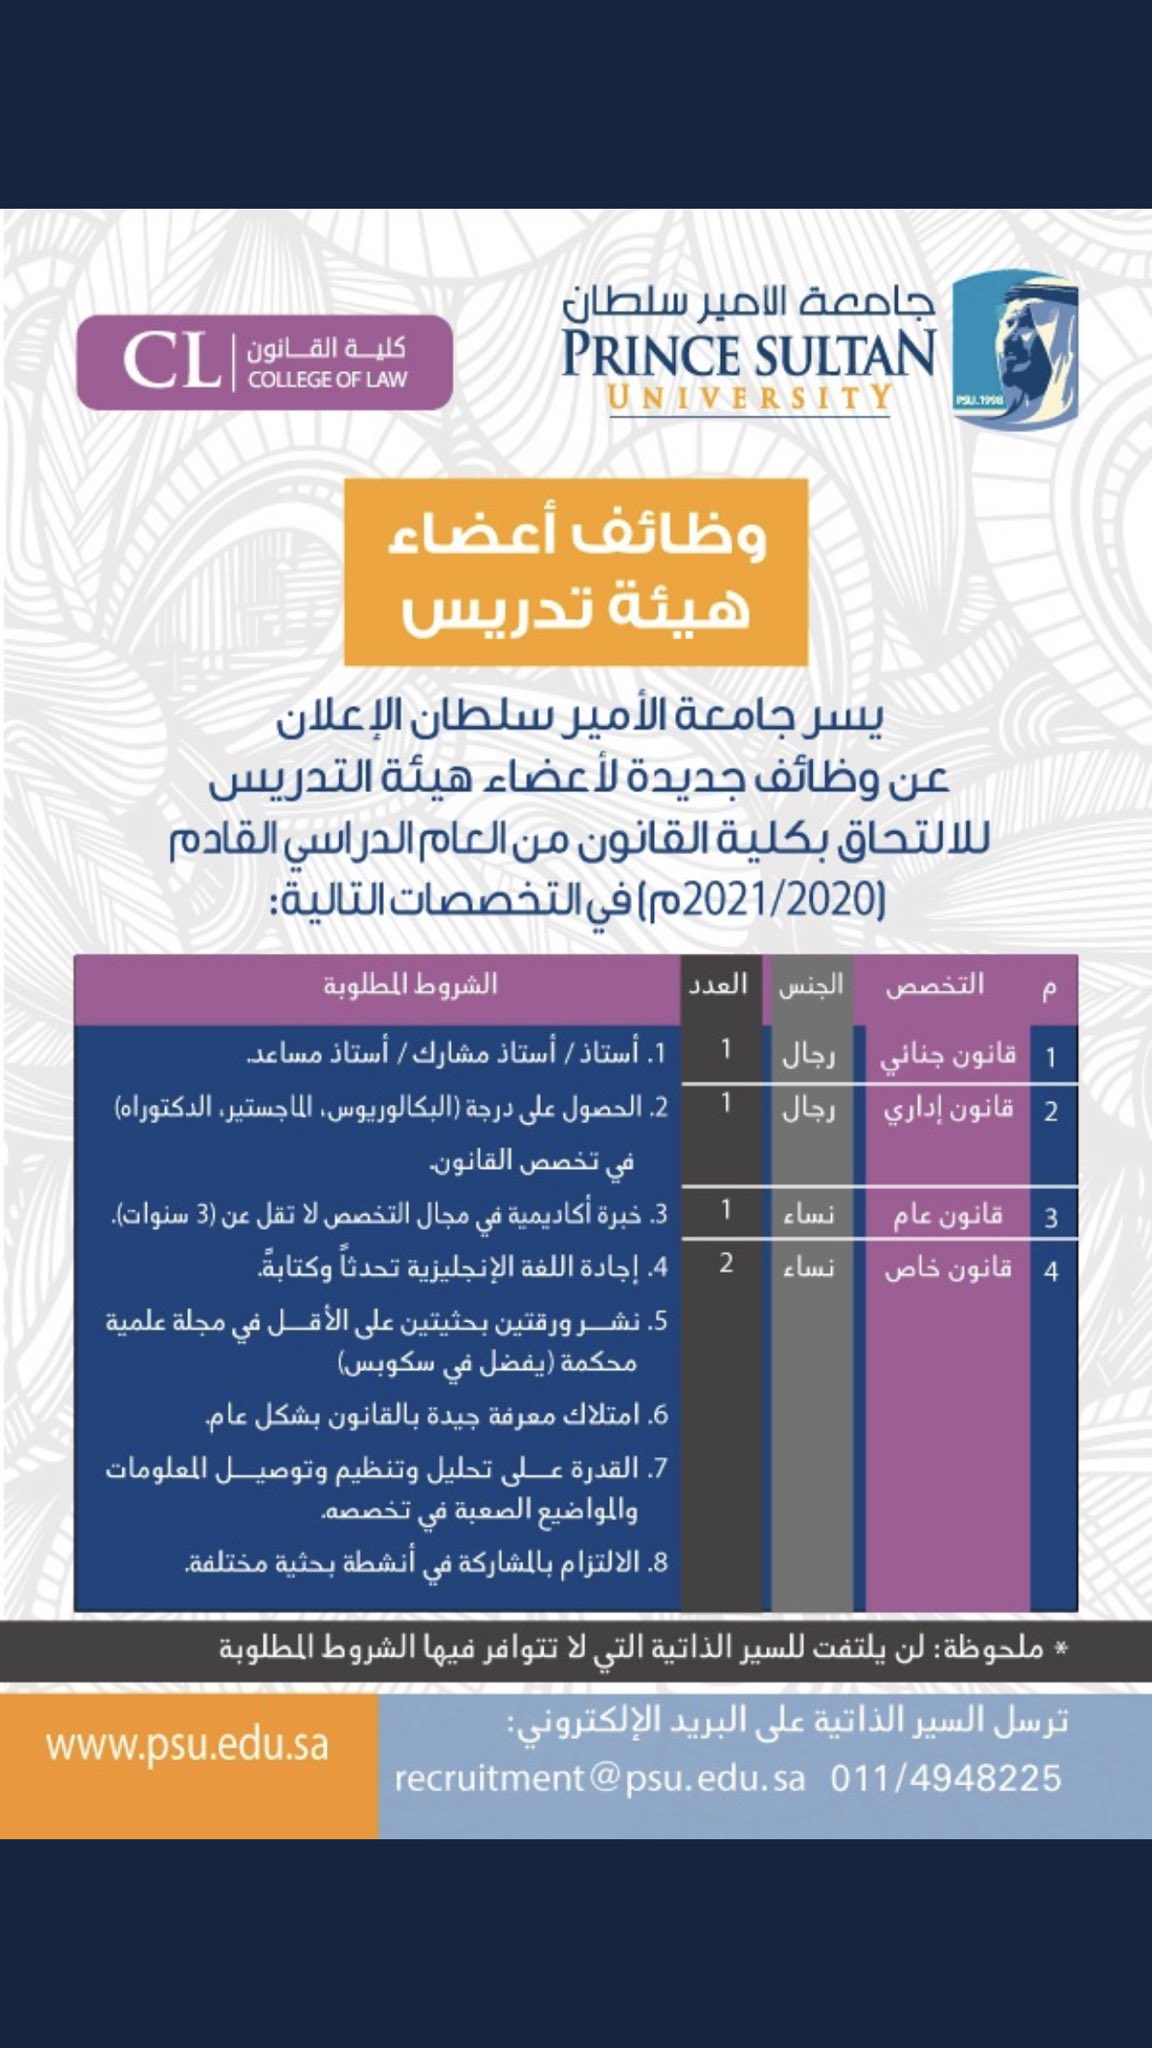 جامعة الامير سلطان توظيف